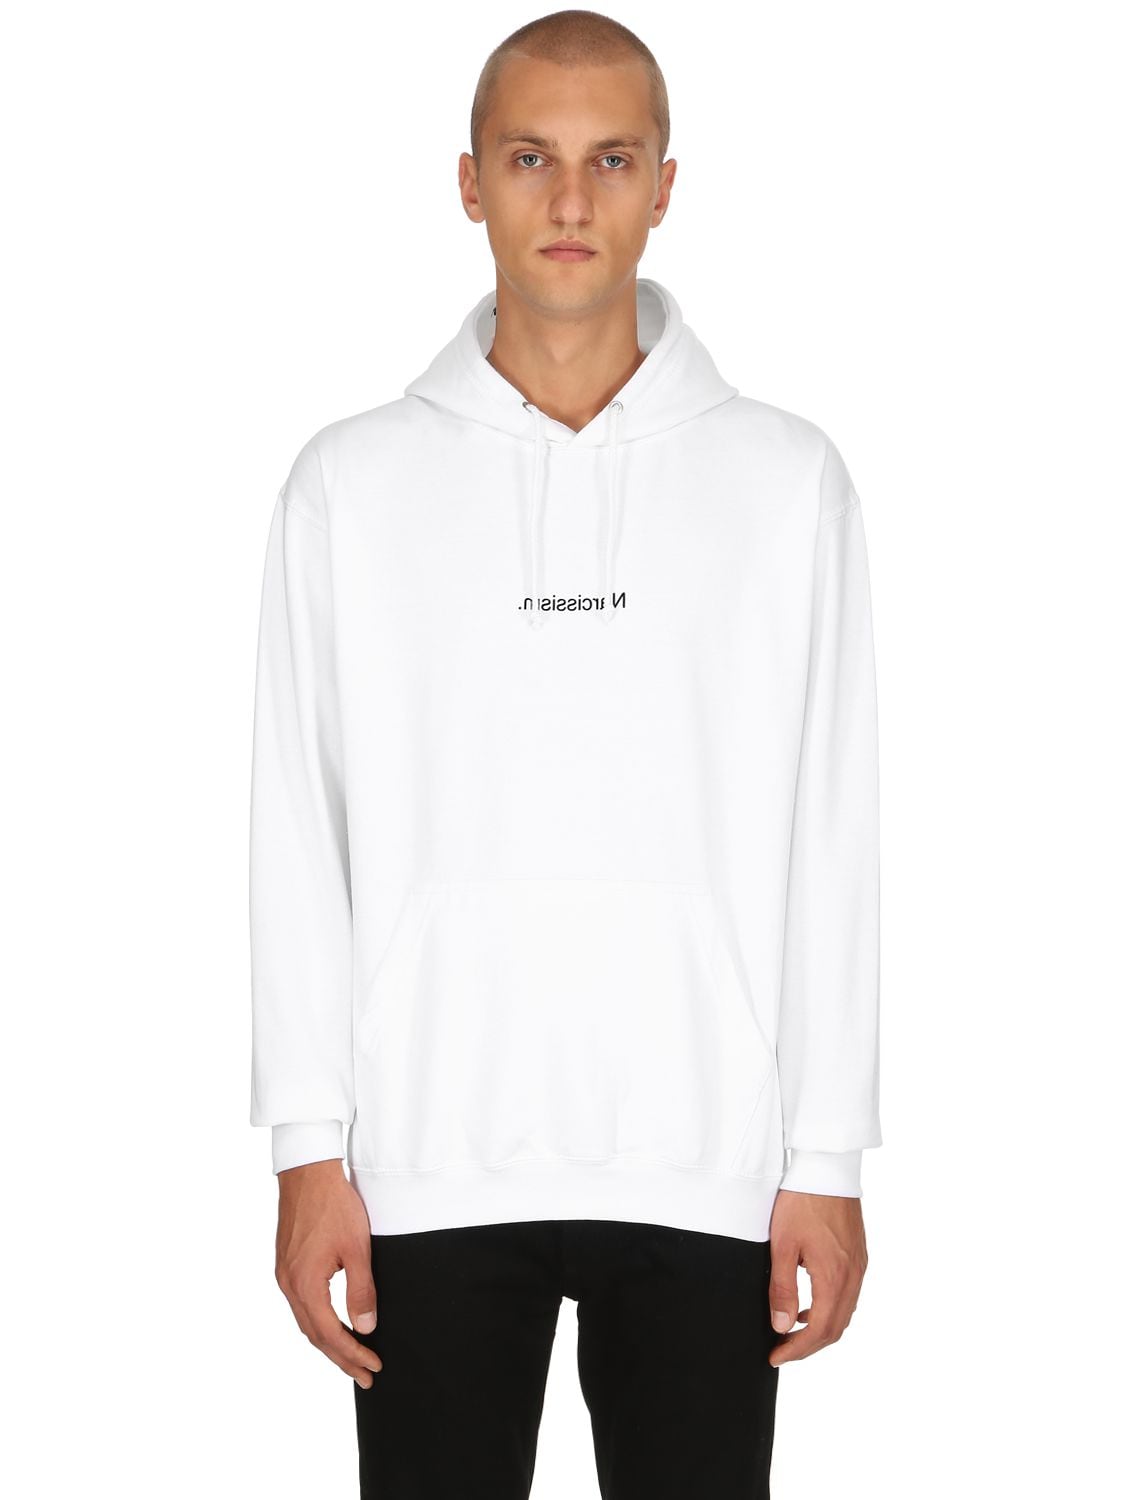 Famt - Fuck Art Make Tees Narcissism Sweatshirt Hoodie In White